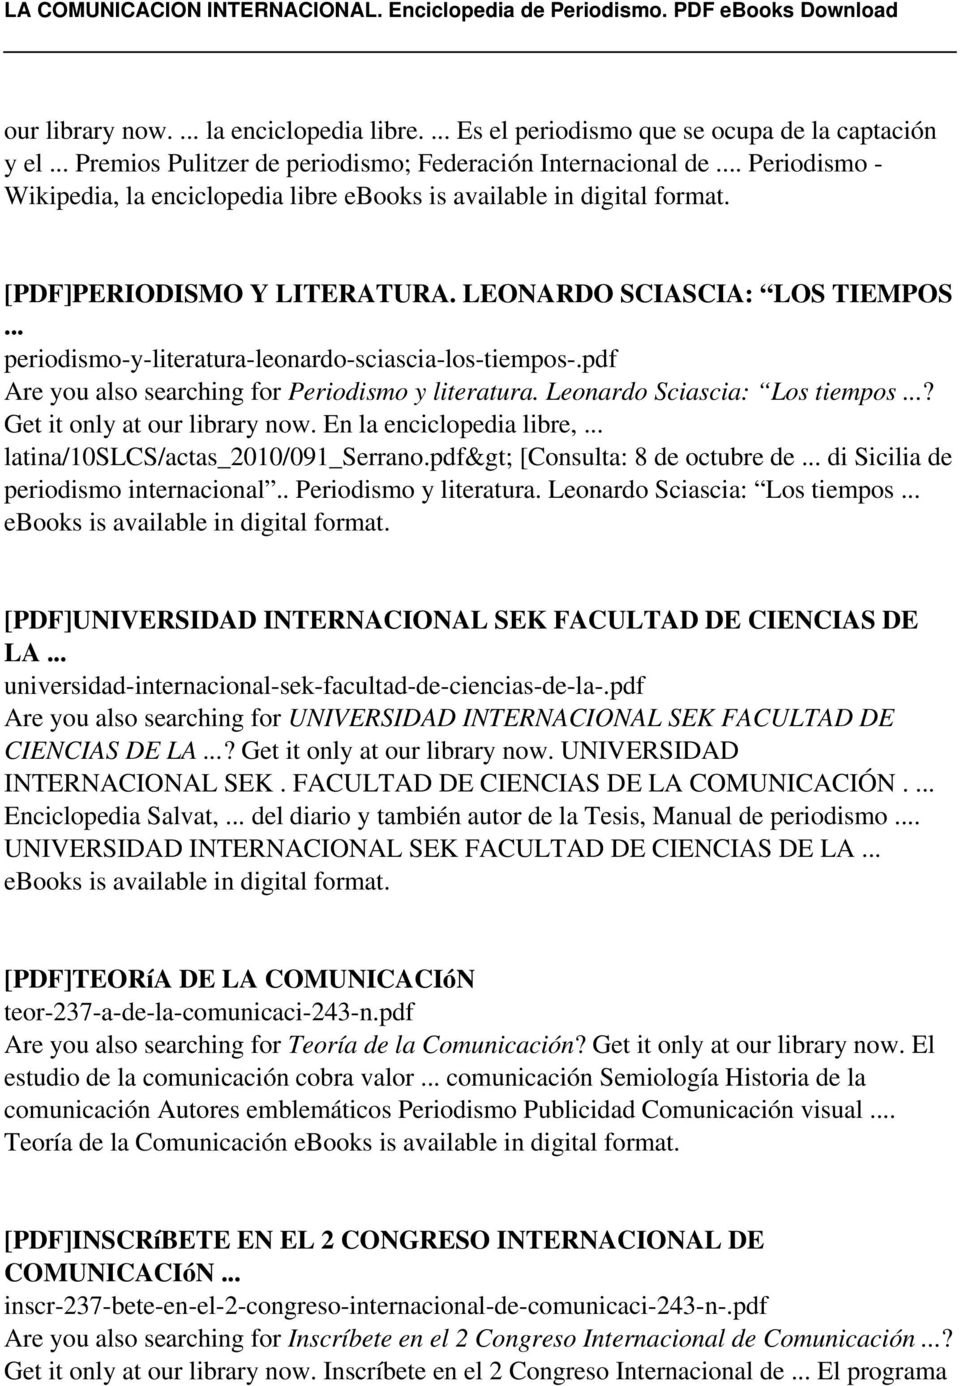 pdf Are you also searching for Periodismo y literatura. Leonardo Sciascia: Los tiempos...? Get it only at our library now. En la enciclopedia libre,... latina/10slcs/actas_2010/091_serrano.